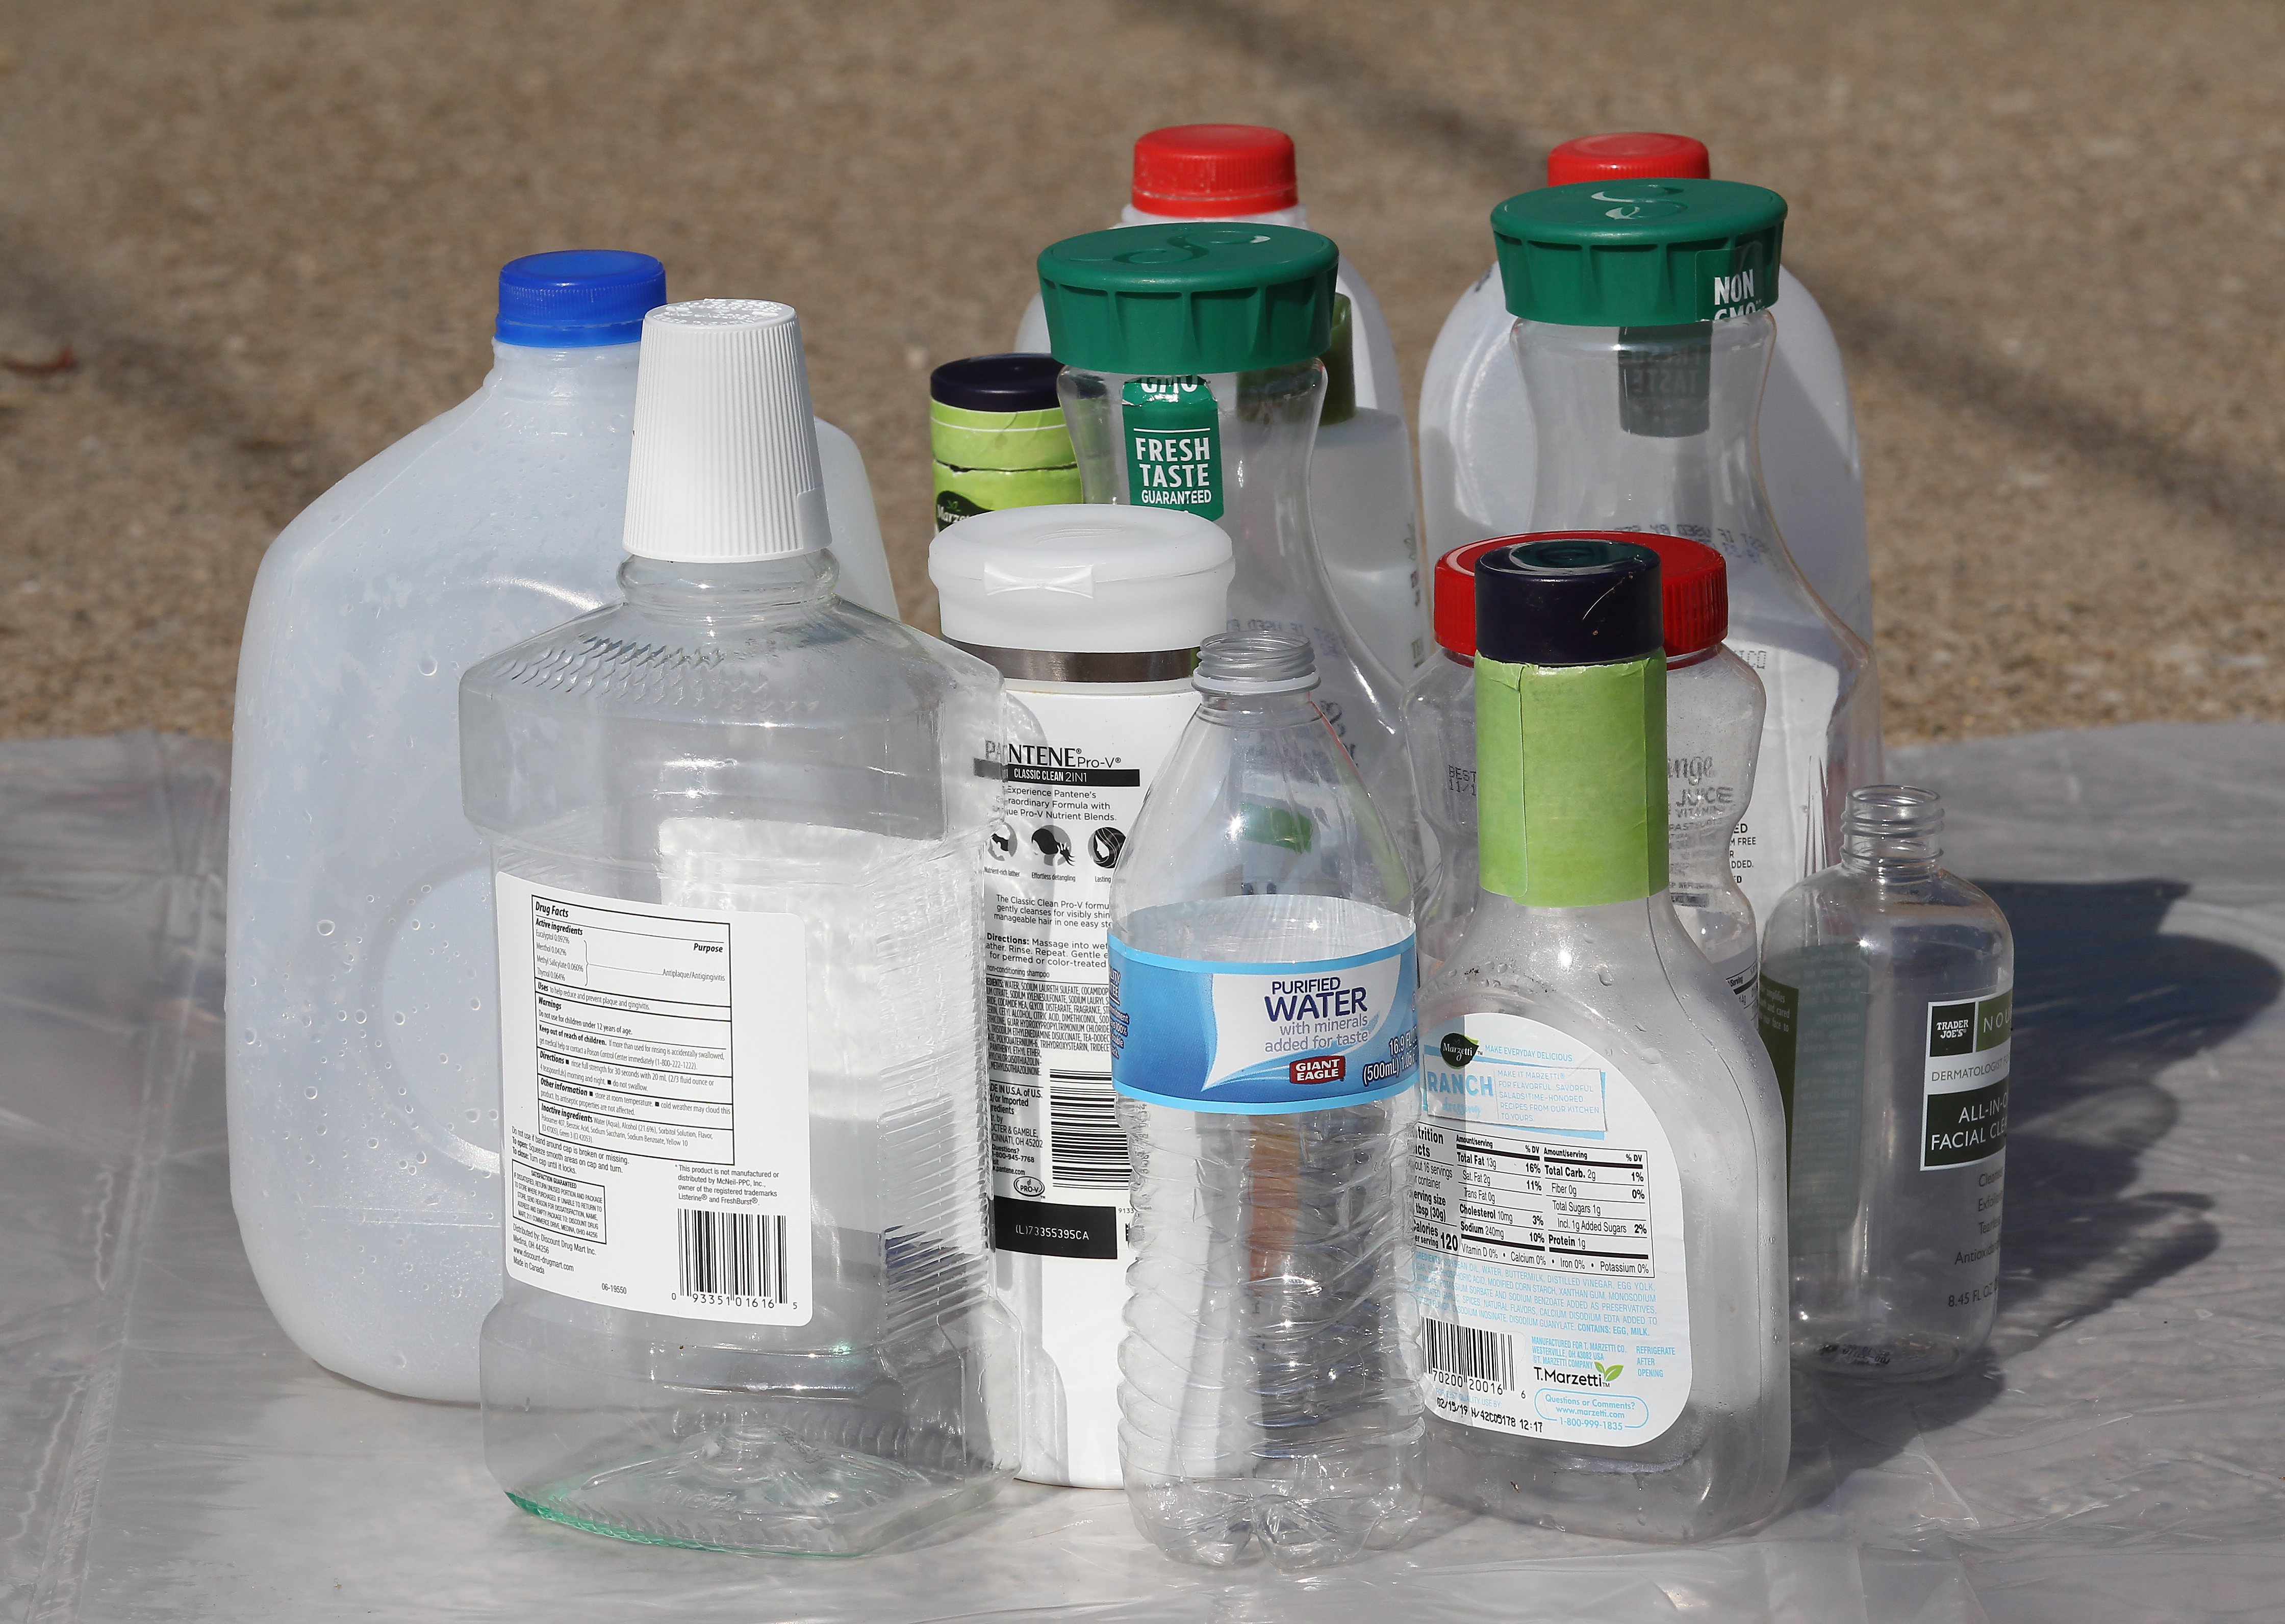 How Long Plastic Bottles Take to Degrade in the Ocean